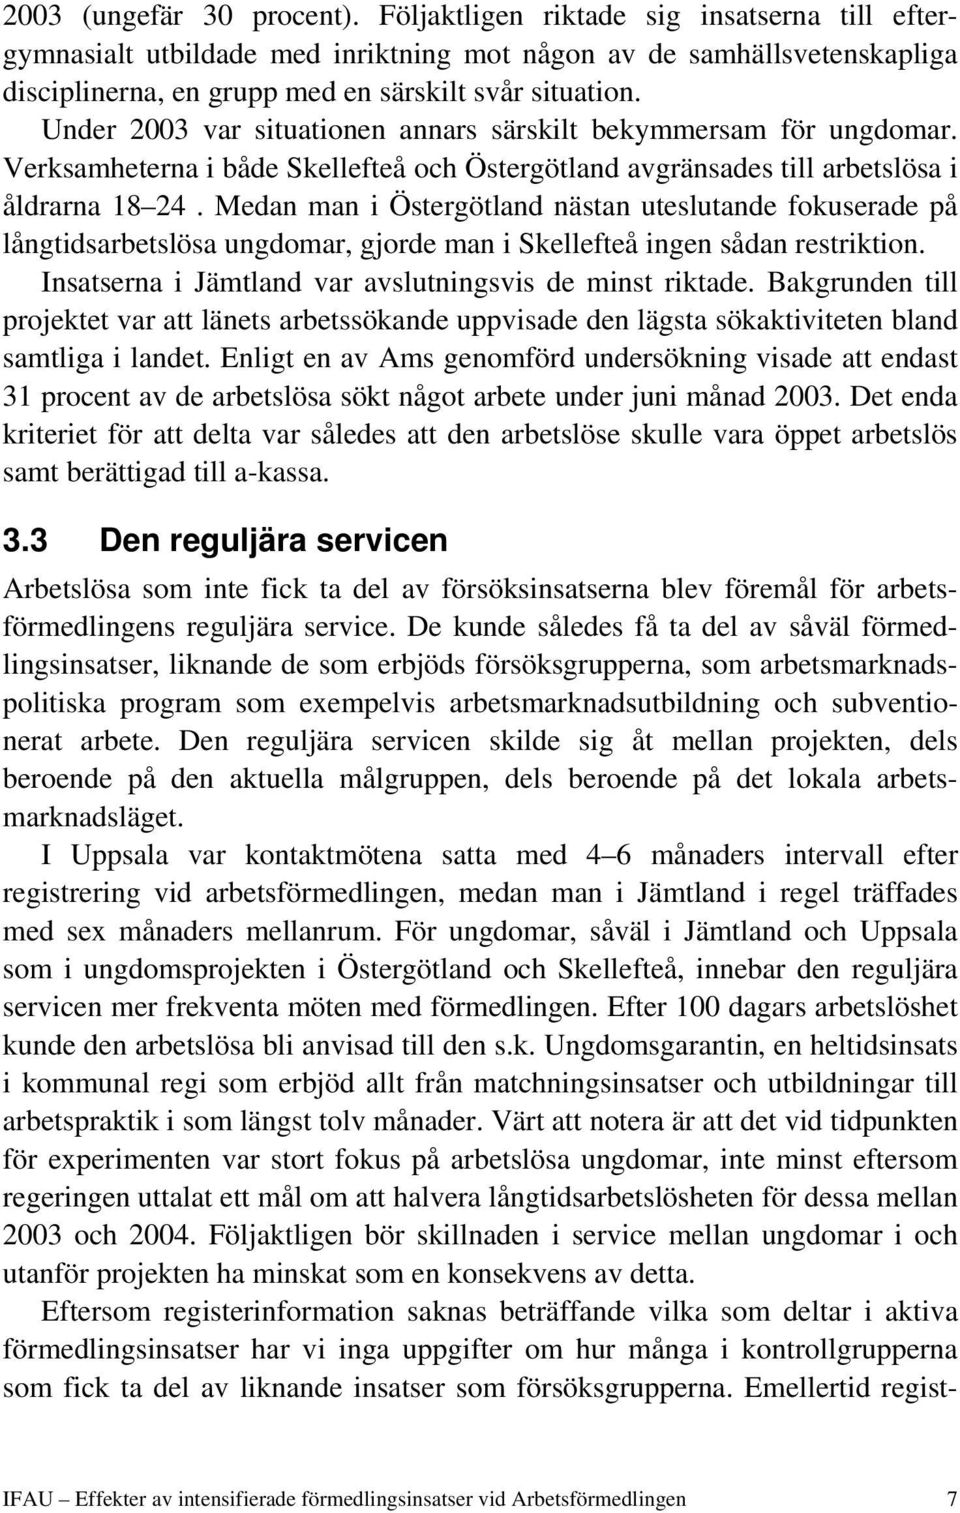 Under 2003 var situationen annars särskilt bekymmersam för ungdomar. Verksamheterna i både Skellefteå och Östergötland avgränsades till arbetslösa i åldrarna 18 24.